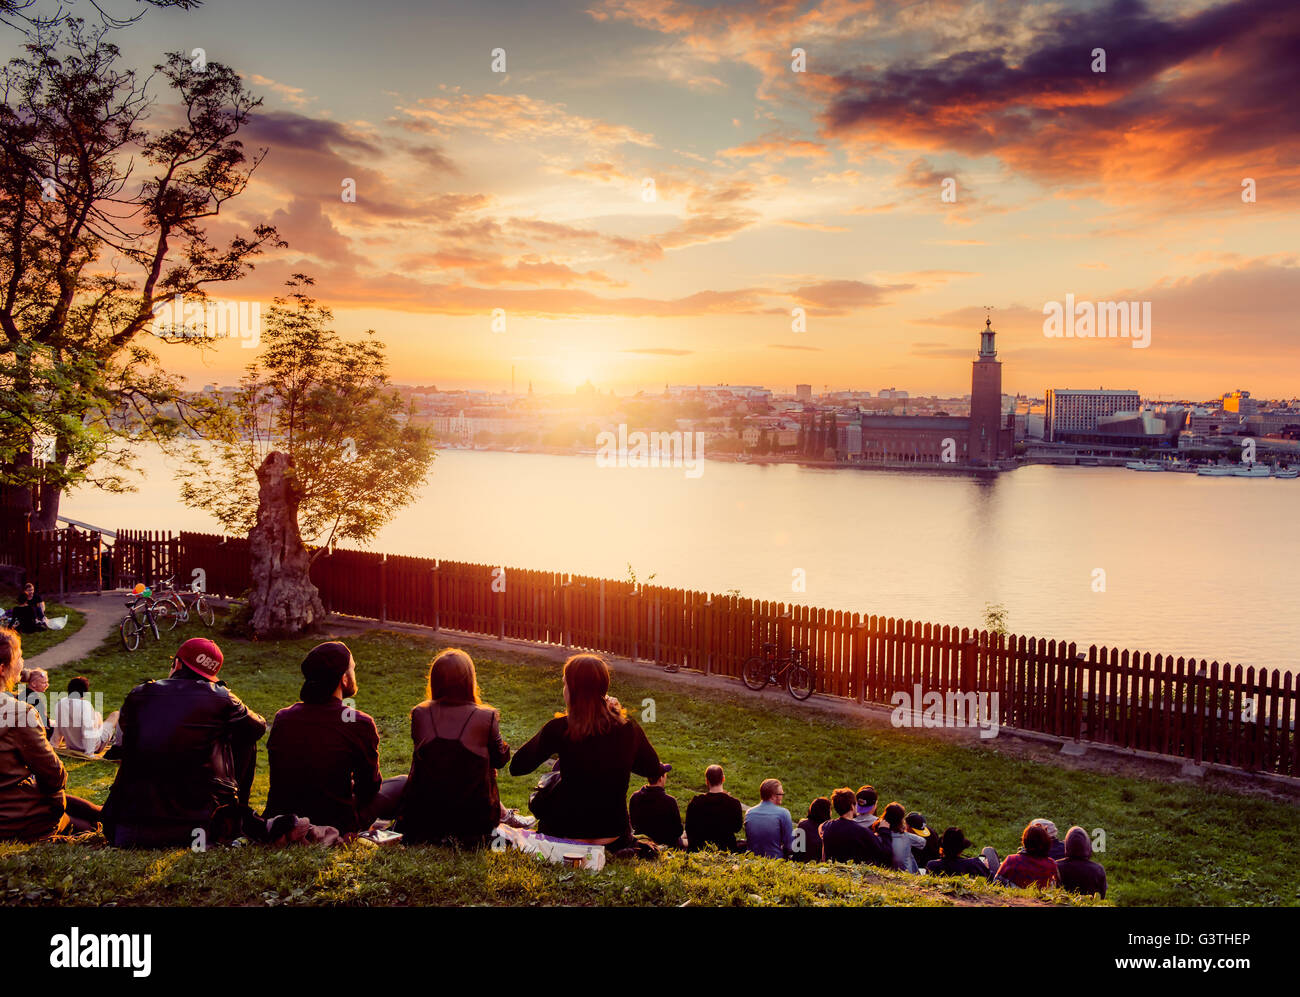 Suecia, Sodermalm, Mariaberget, Ivar Los Park, la gente descansando en park Foto de stock